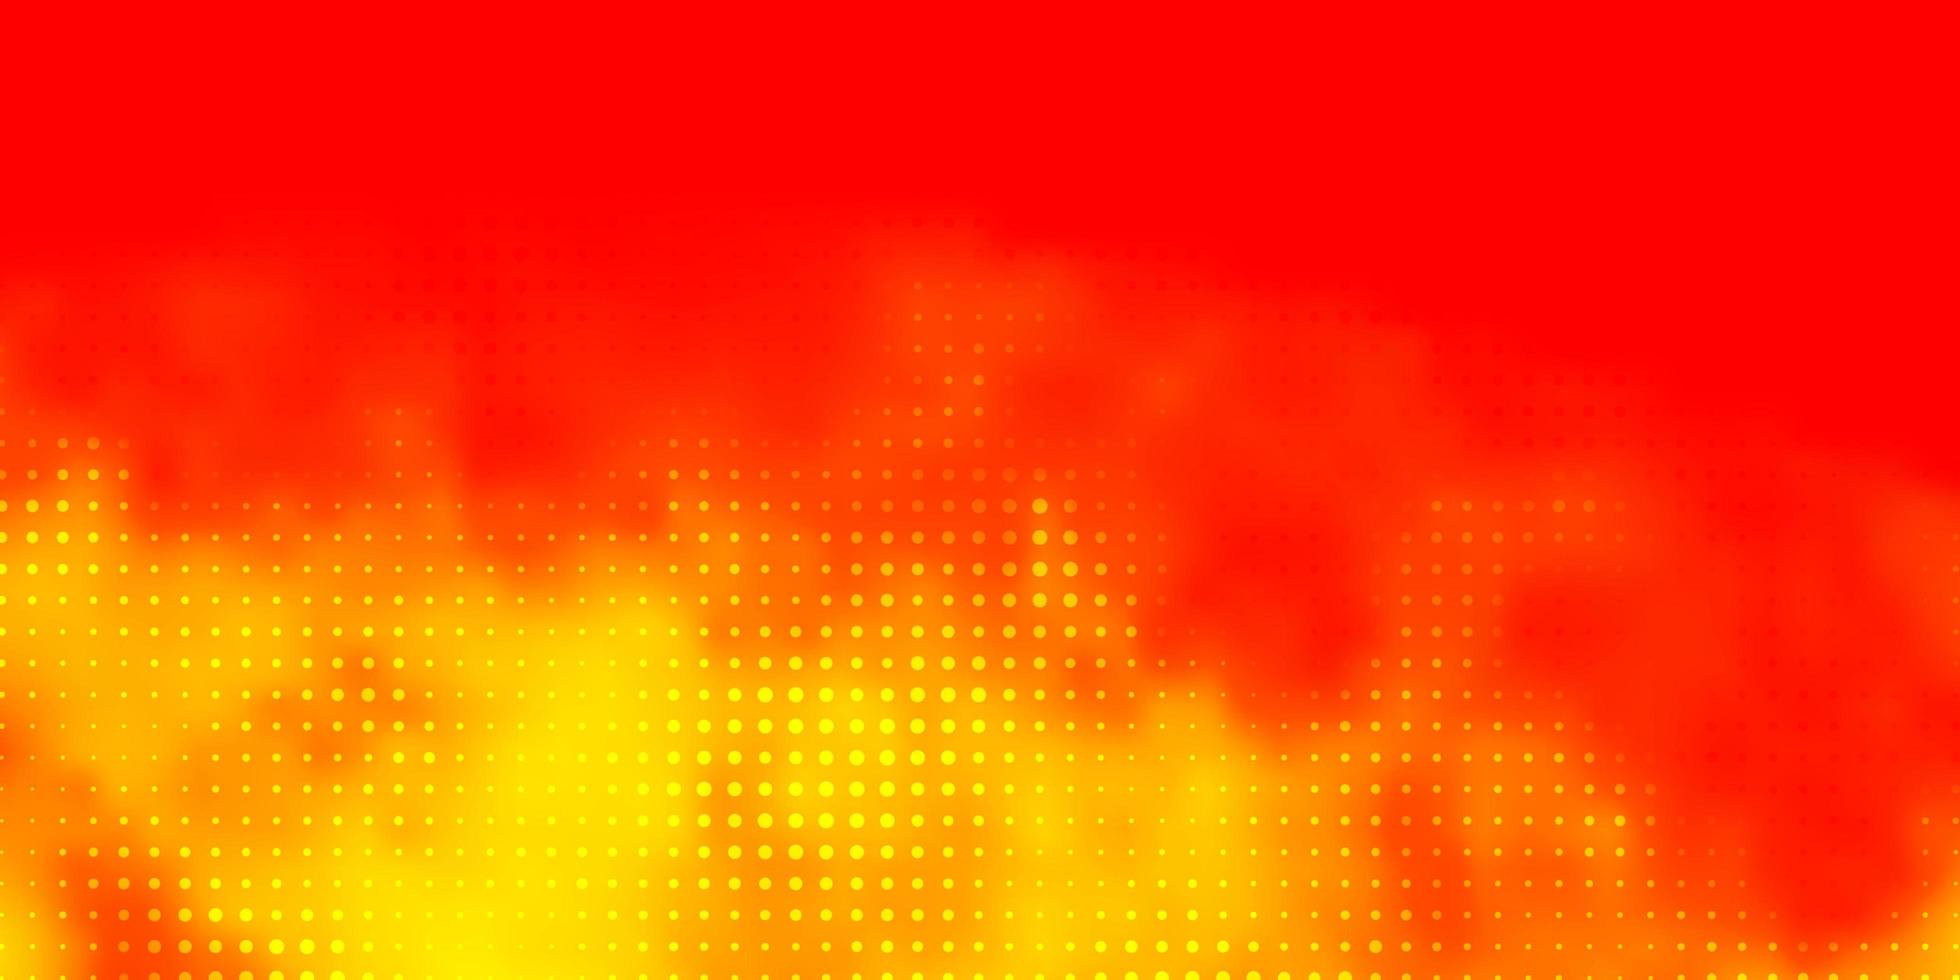 sfondo vettoriale arancione chiaro con cerchi. illustrazione astratta glitterata con gocce colorate. design per i tuoi annunci pubblicitari.